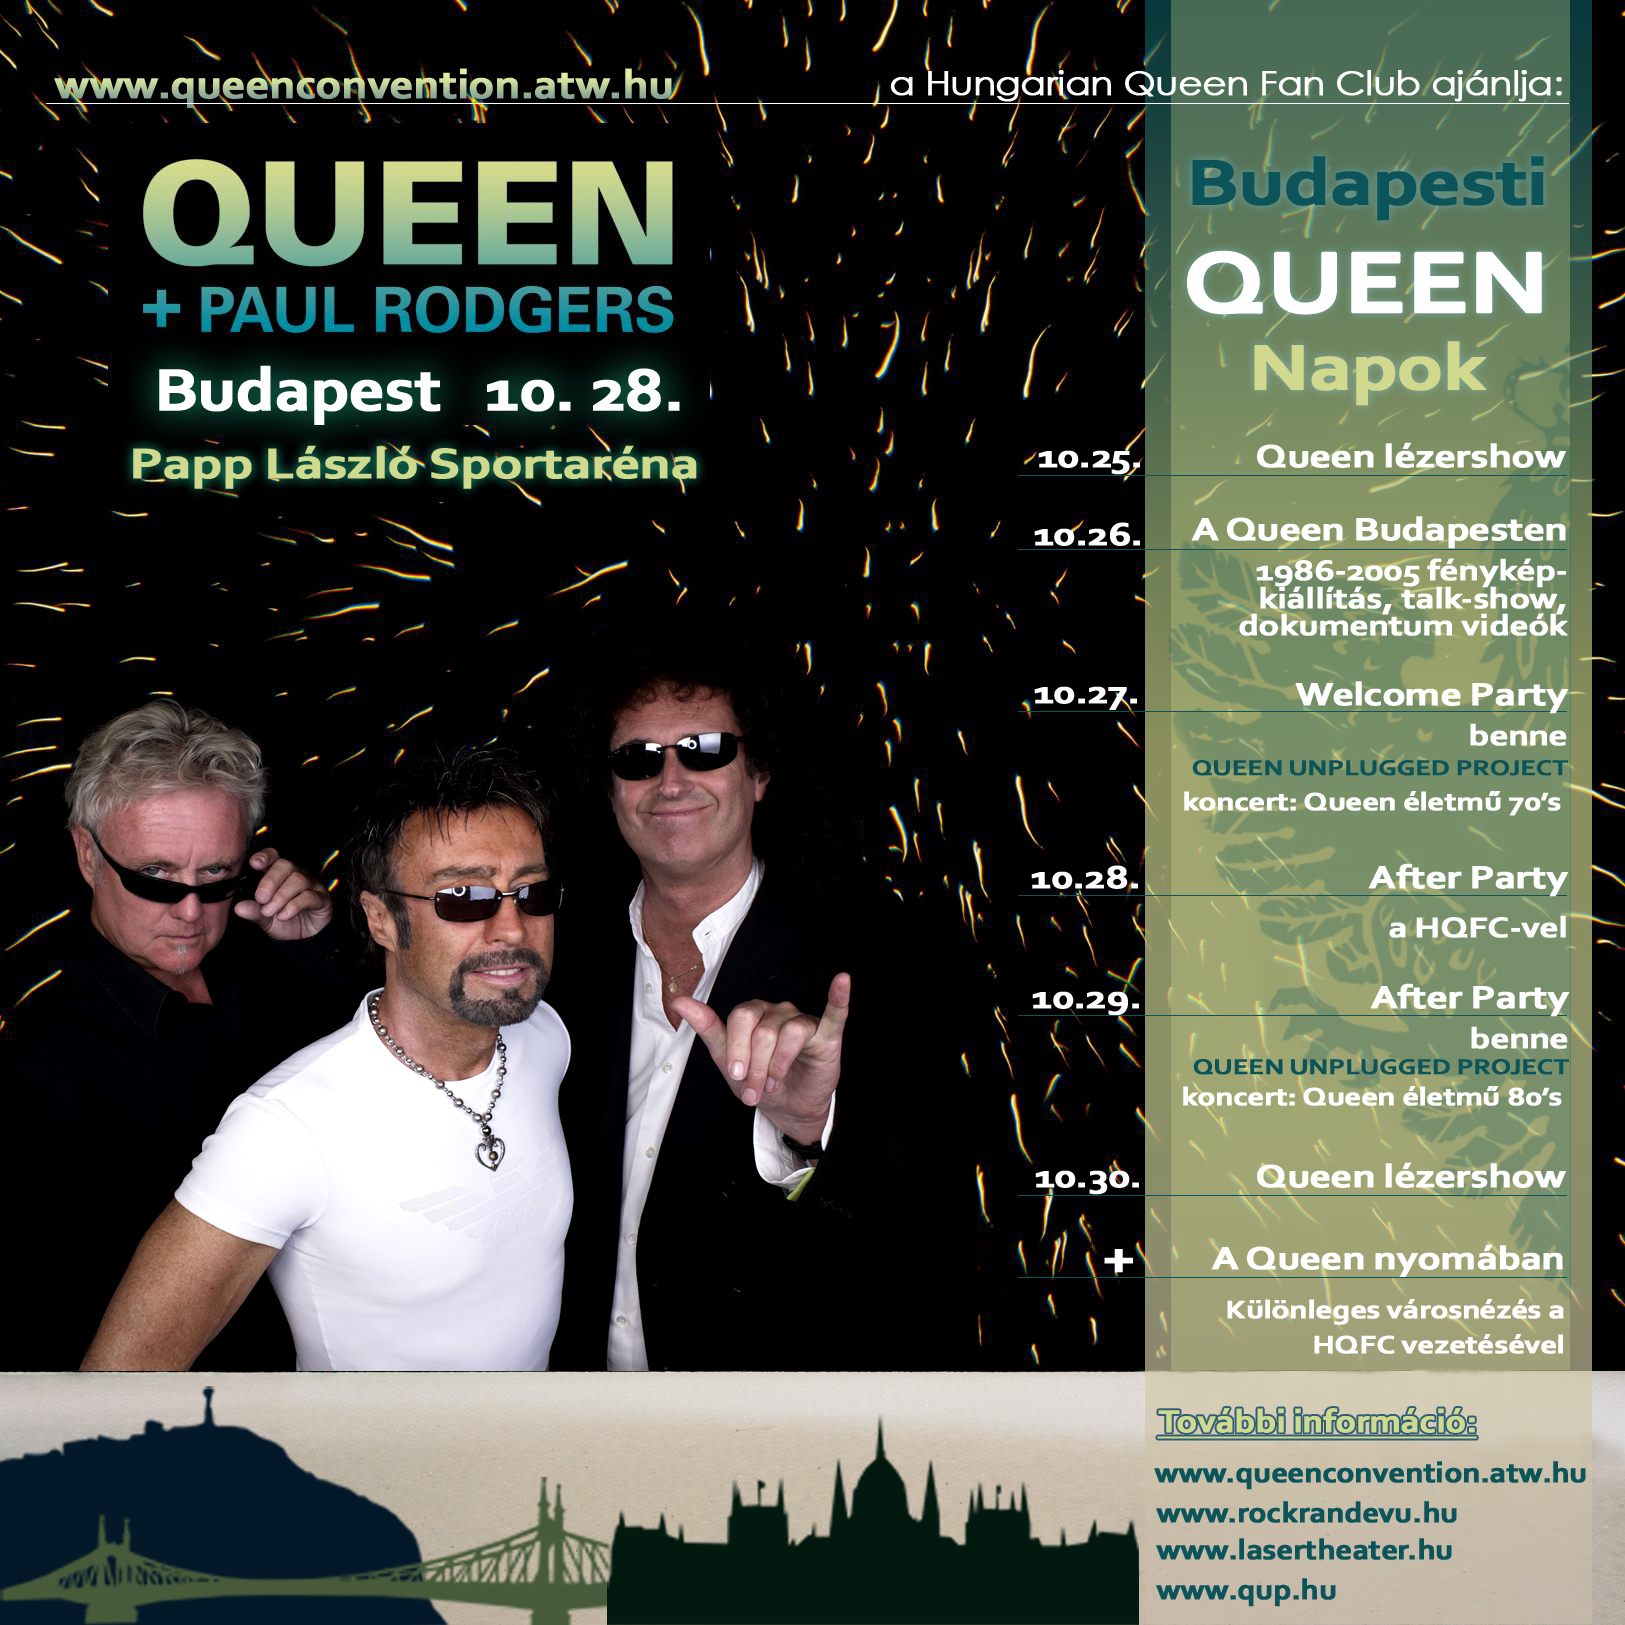 Queen koncert és budapesti rendezvények